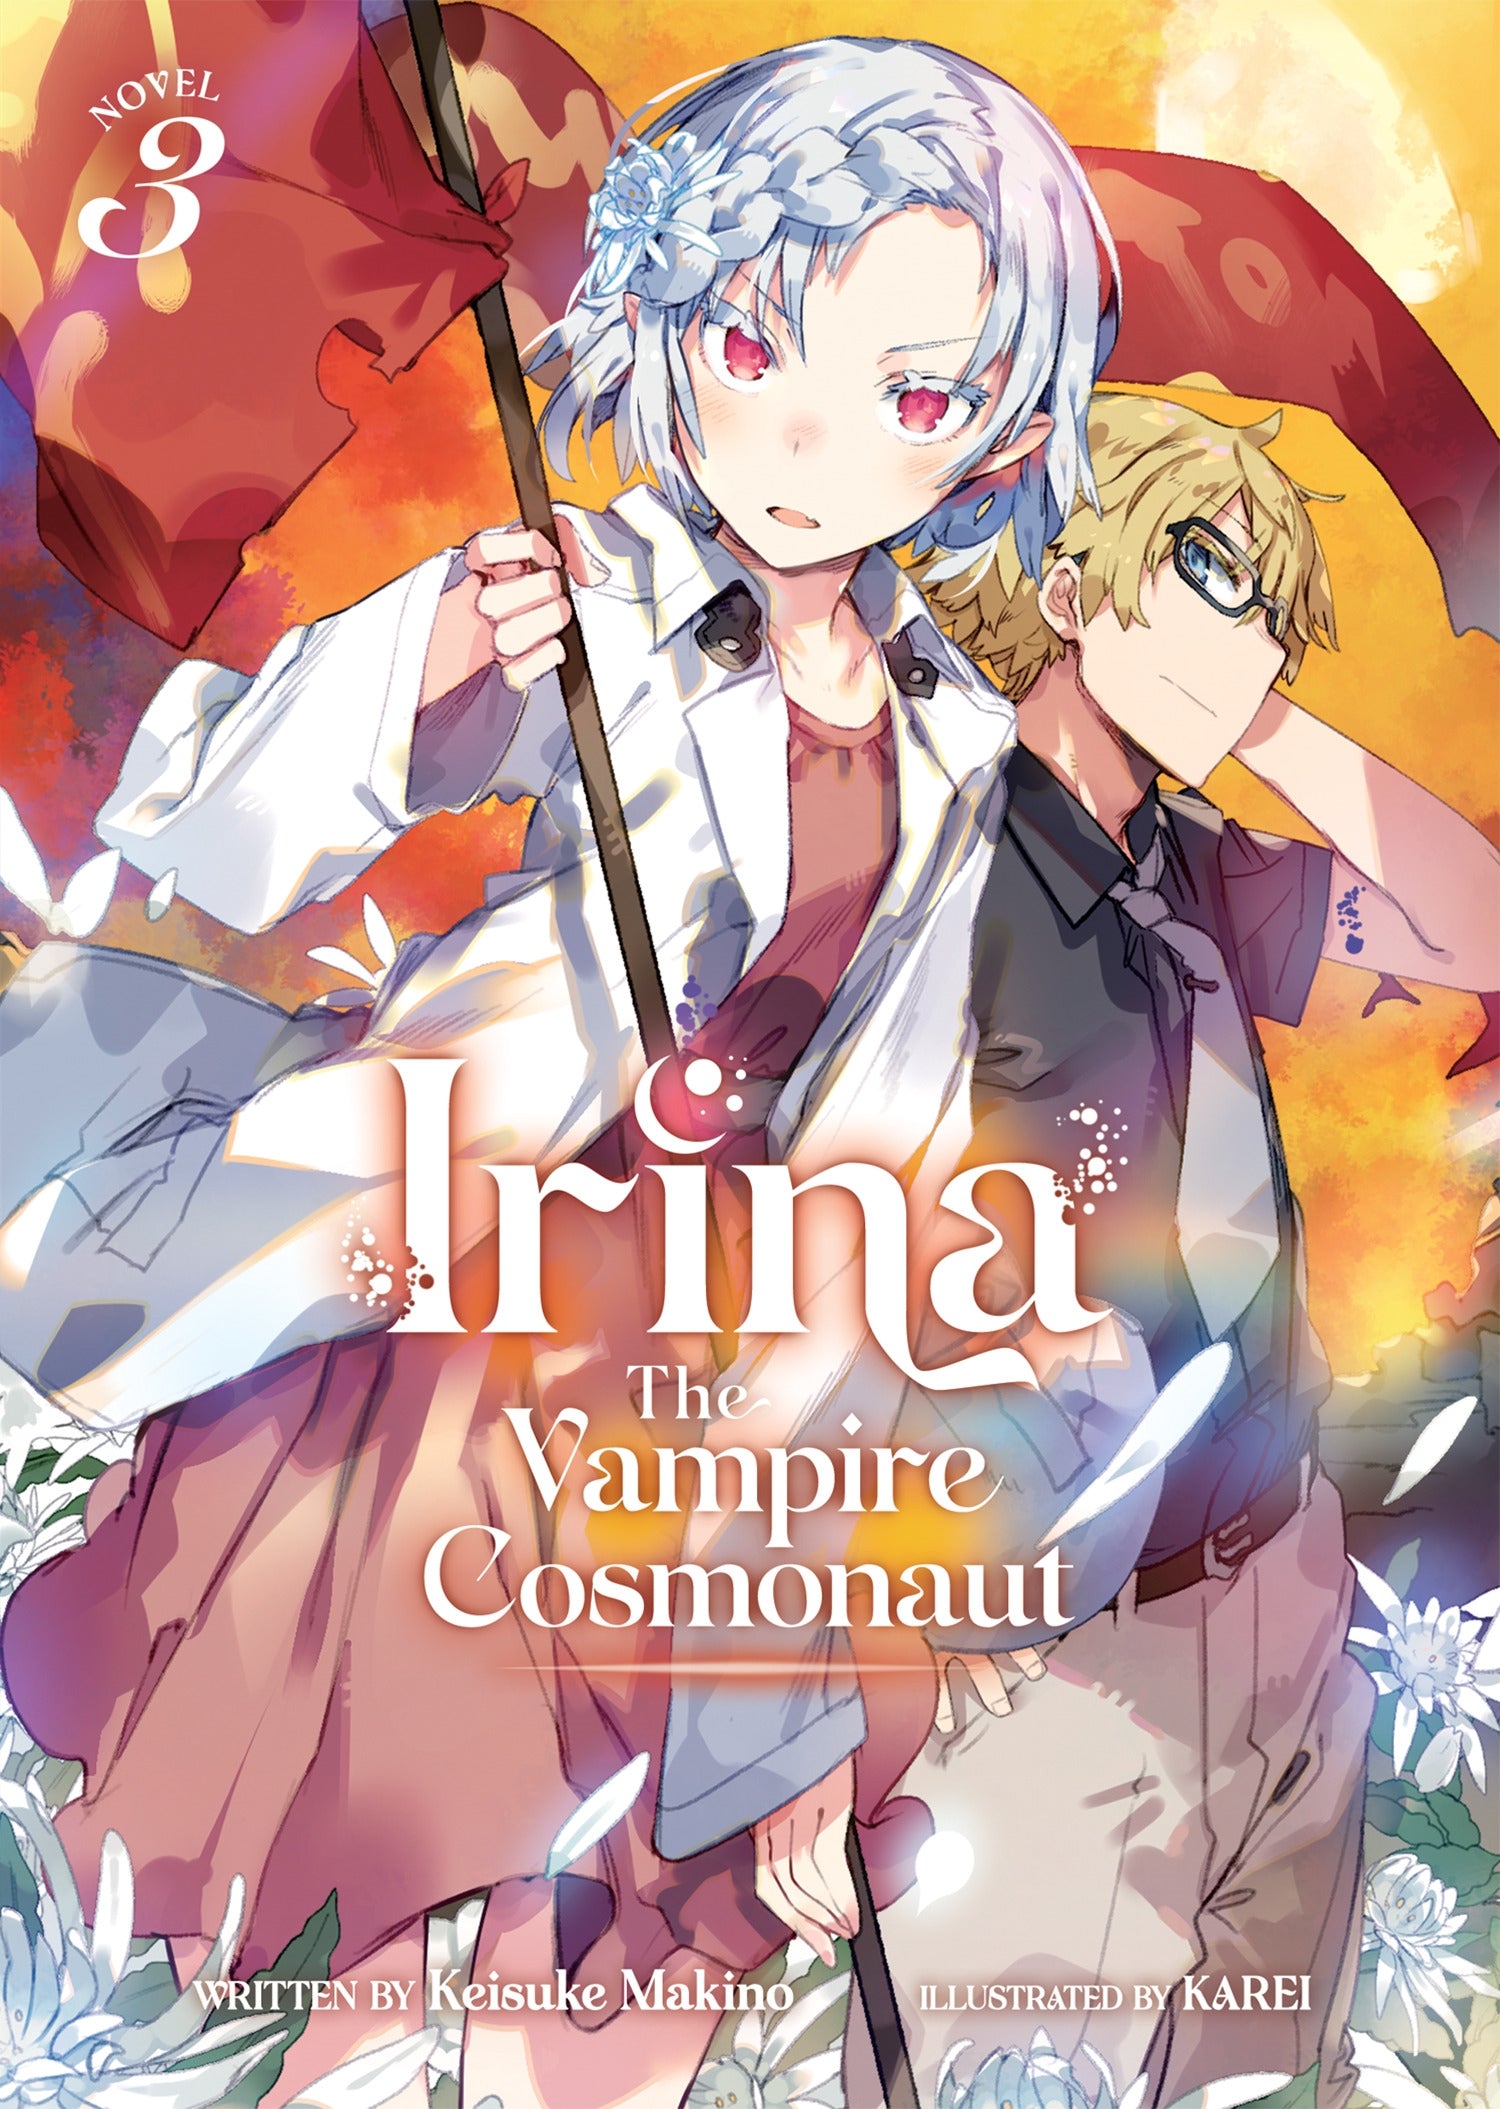 Irina The Vampire Cosmonaut (Light Novel) Vol. 3